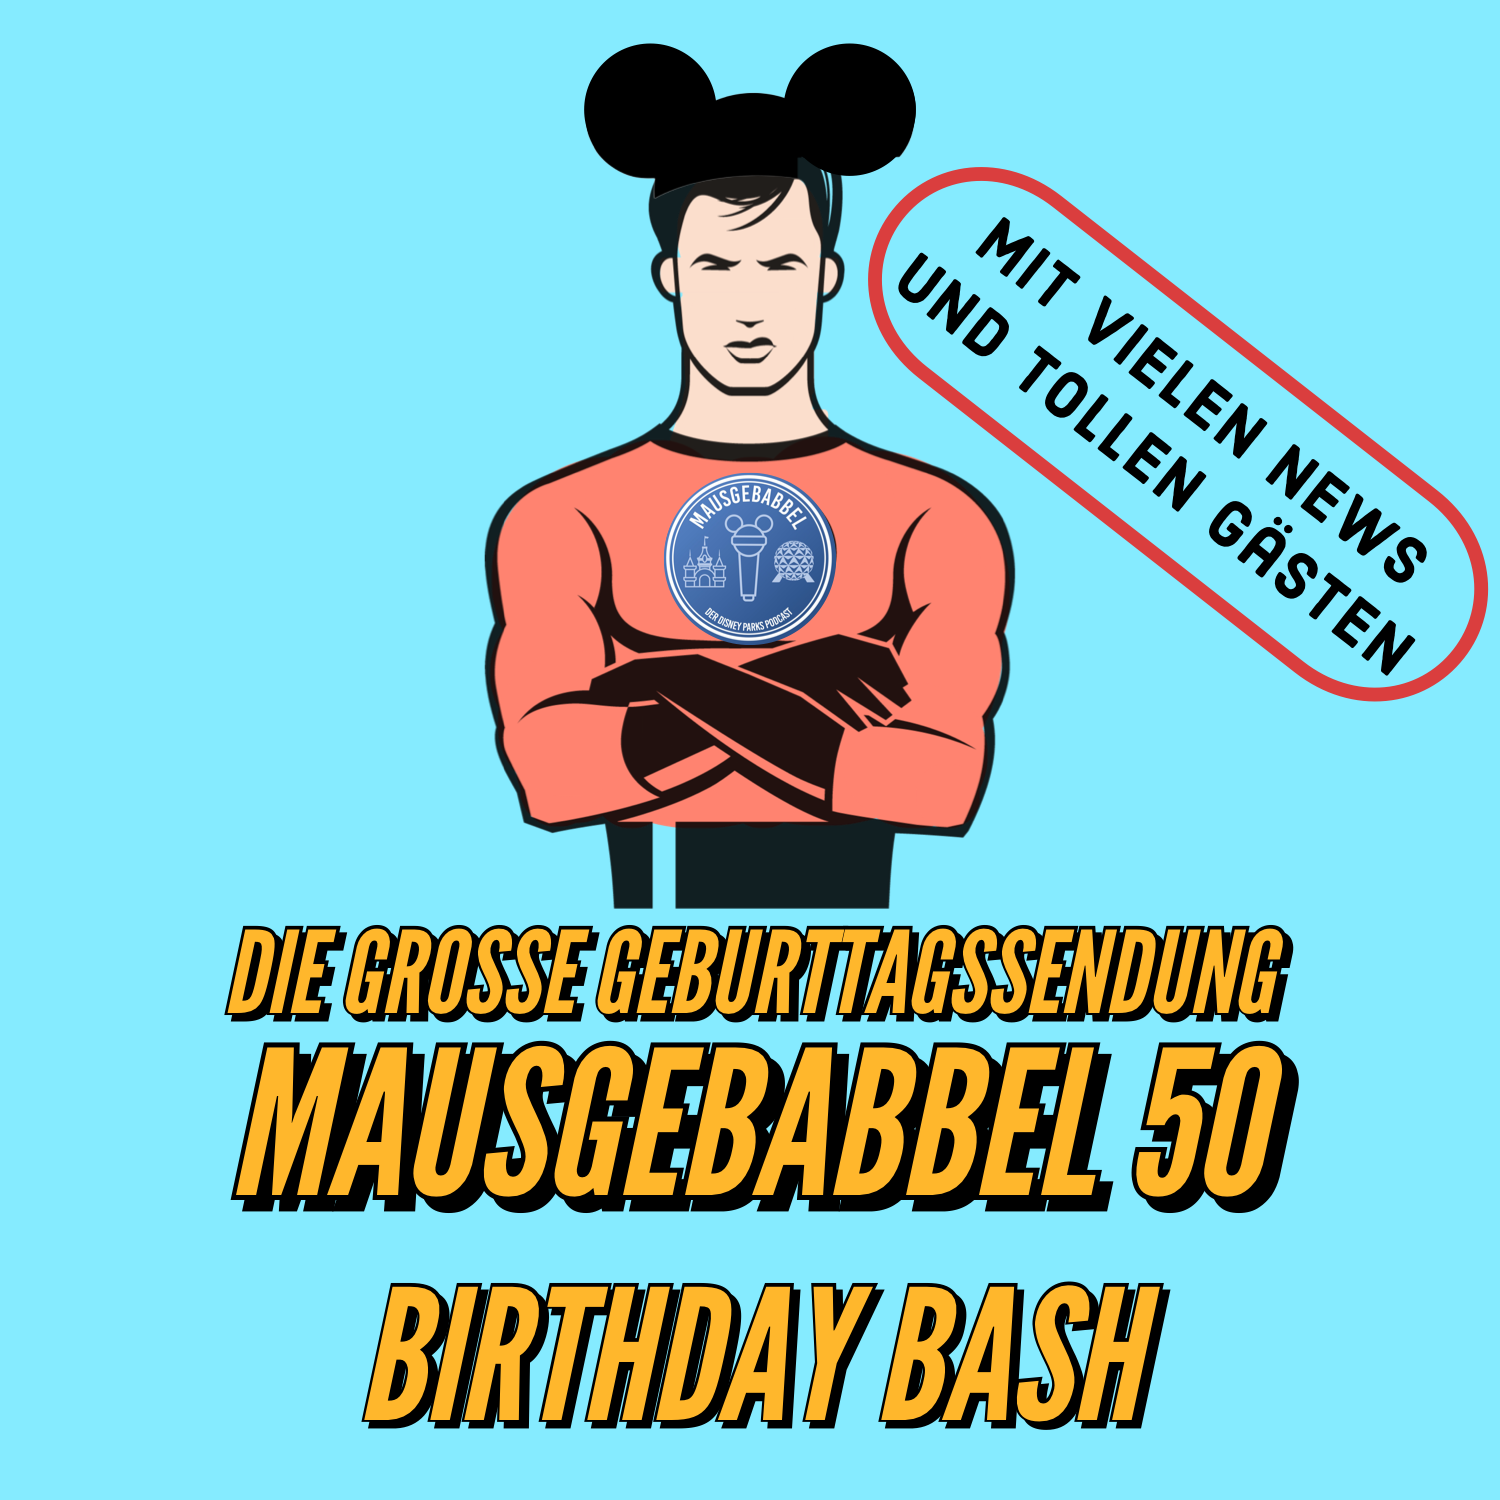 Mausgebabbel 50 - die große Geburtstagssendung mit vielen Disney Parks News und tollen Gästen 2